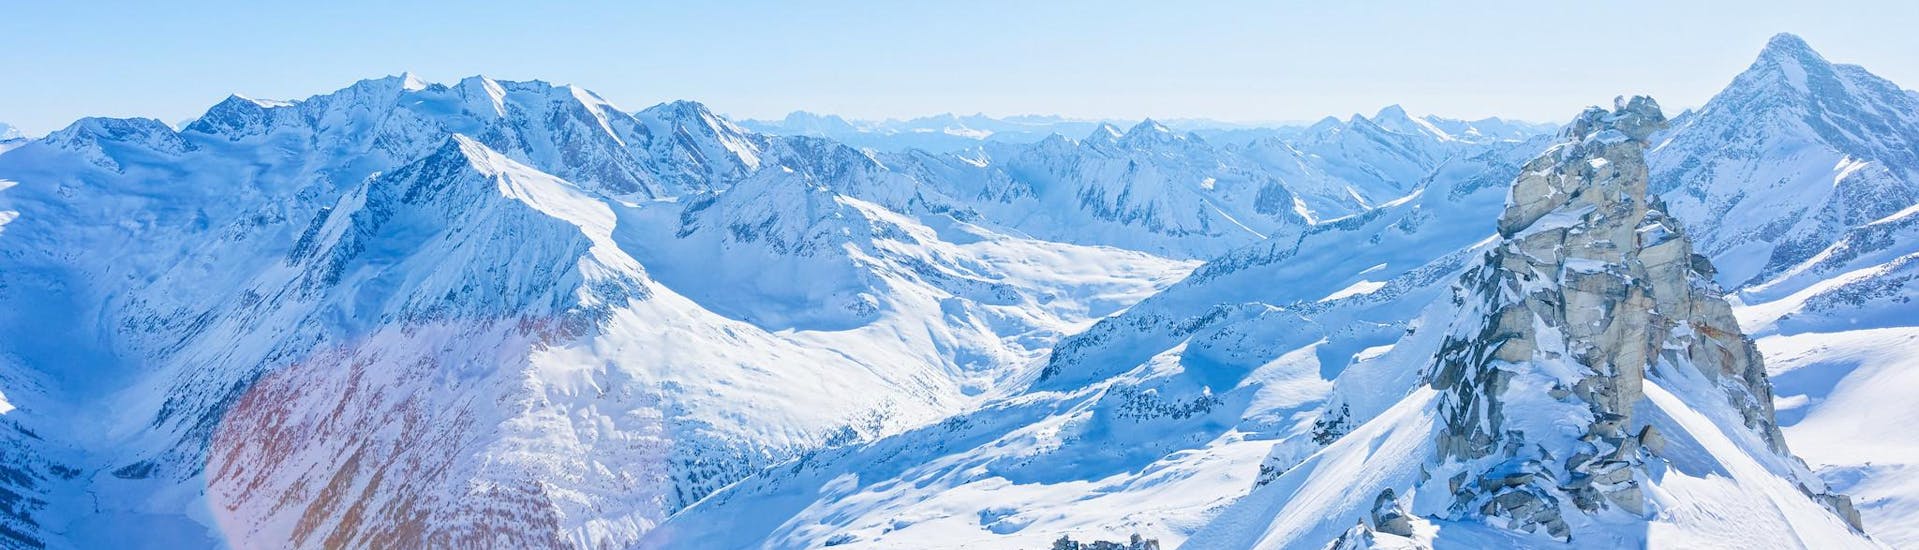 Blick auf die schneebedeckten Gipfel des Hintertuxer Gletschers im Skigebieit Zillertal 3000, wo die örtlichen Skischulen ihre Skikurse anbieten.